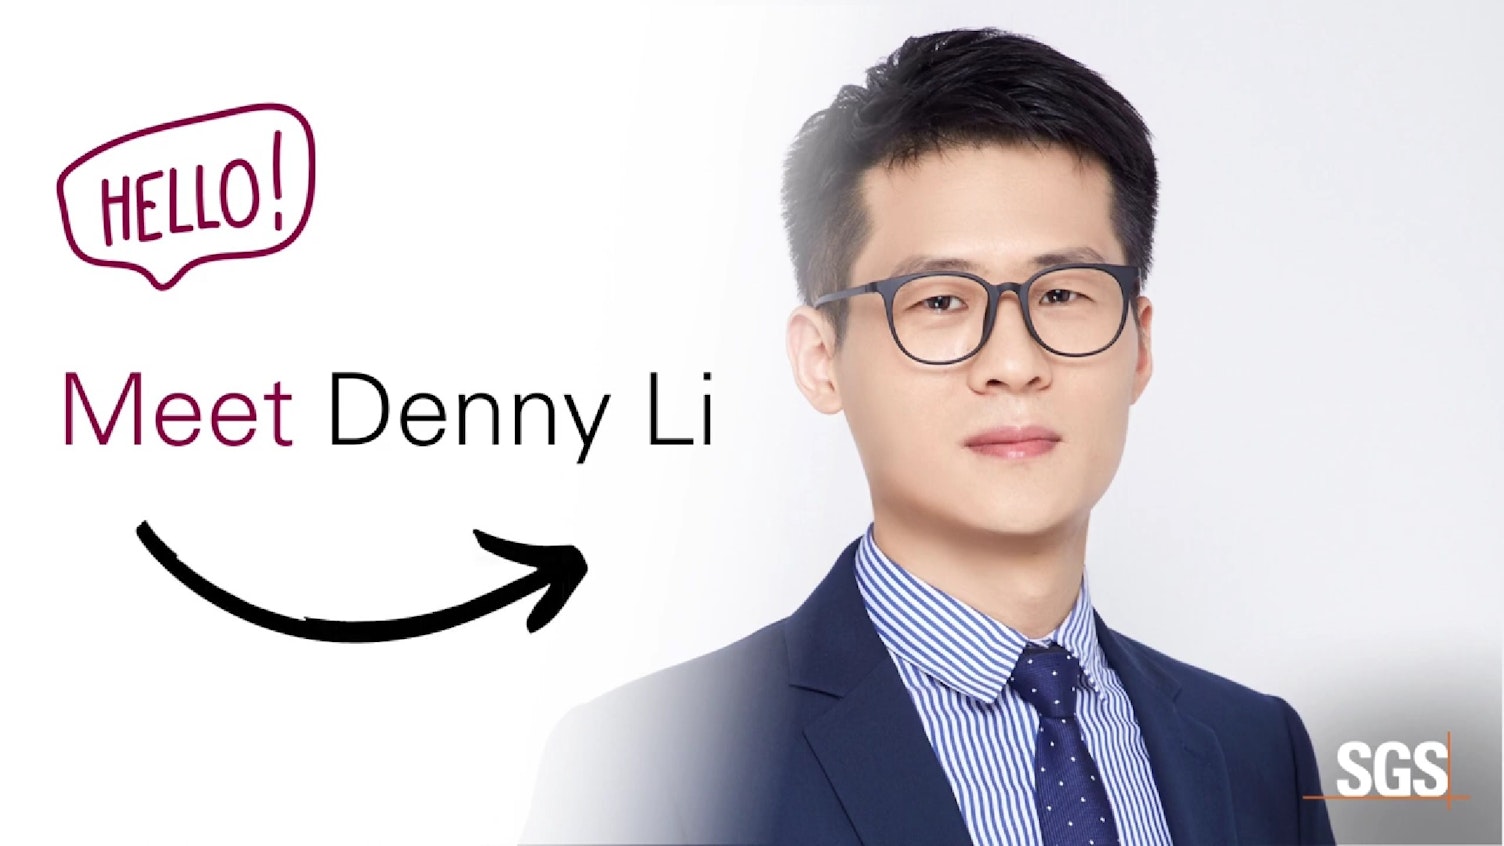 認識我們的化妝品與衛生專家 Denny Li